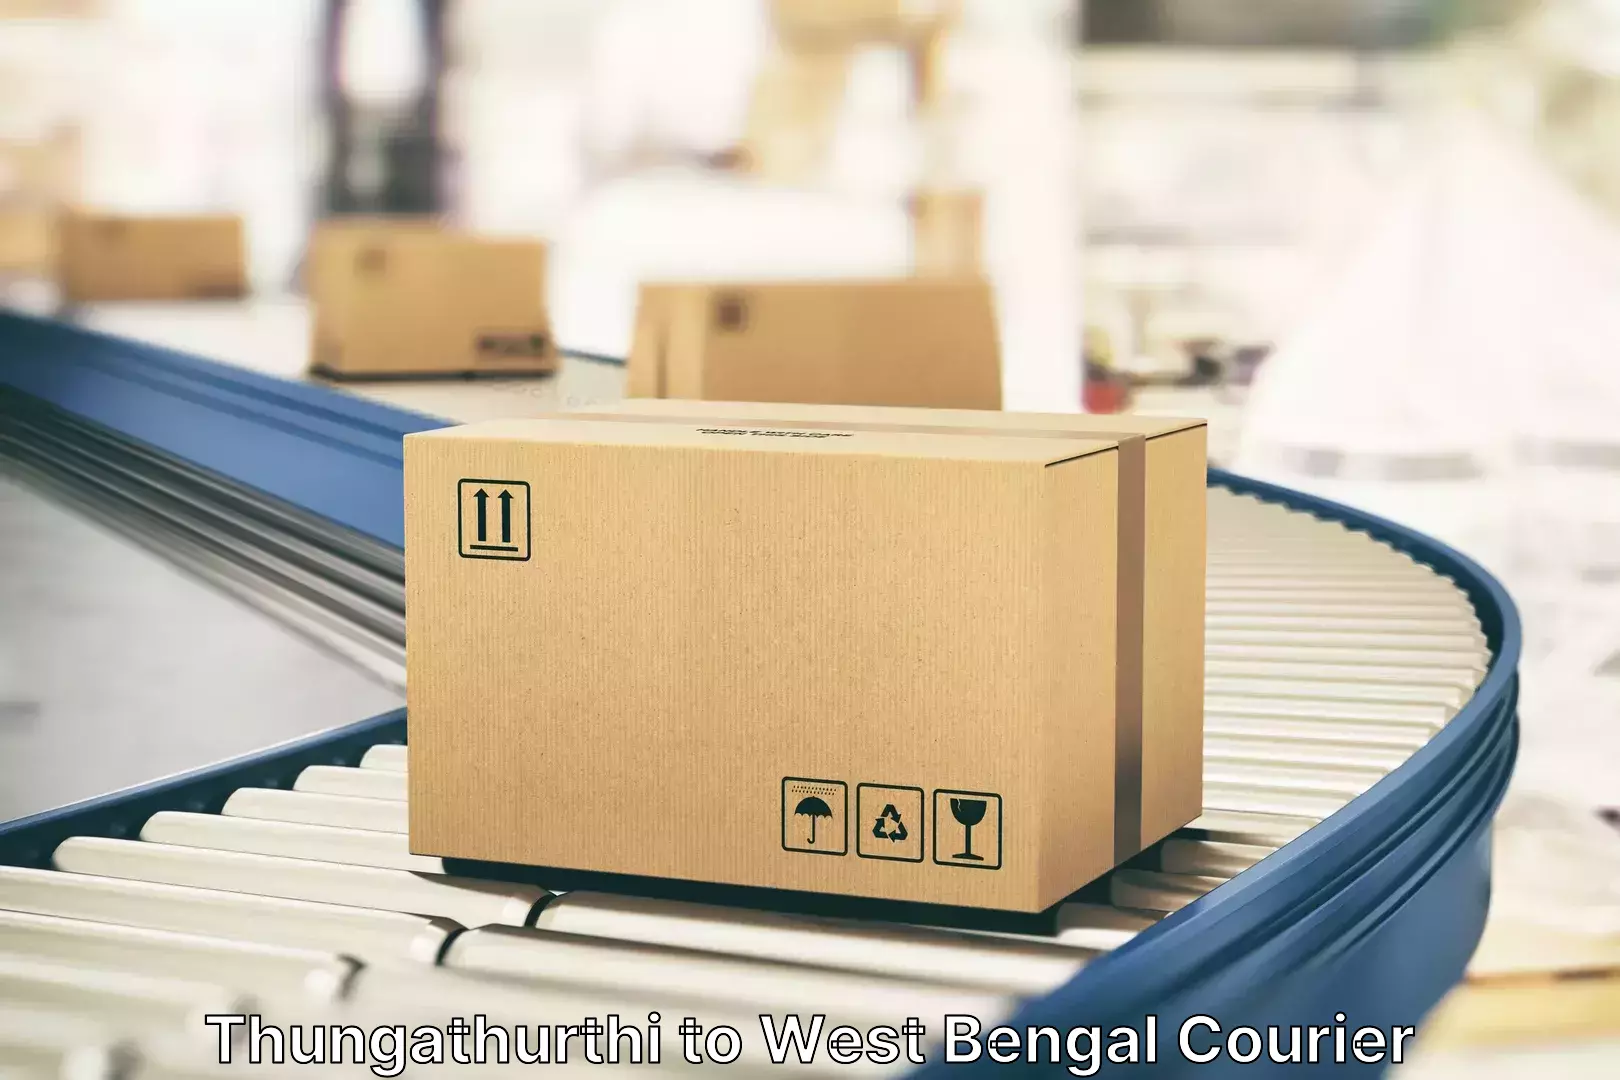 Electronic items luggage shipping Thungathurthi to Calcutta University Kolkata